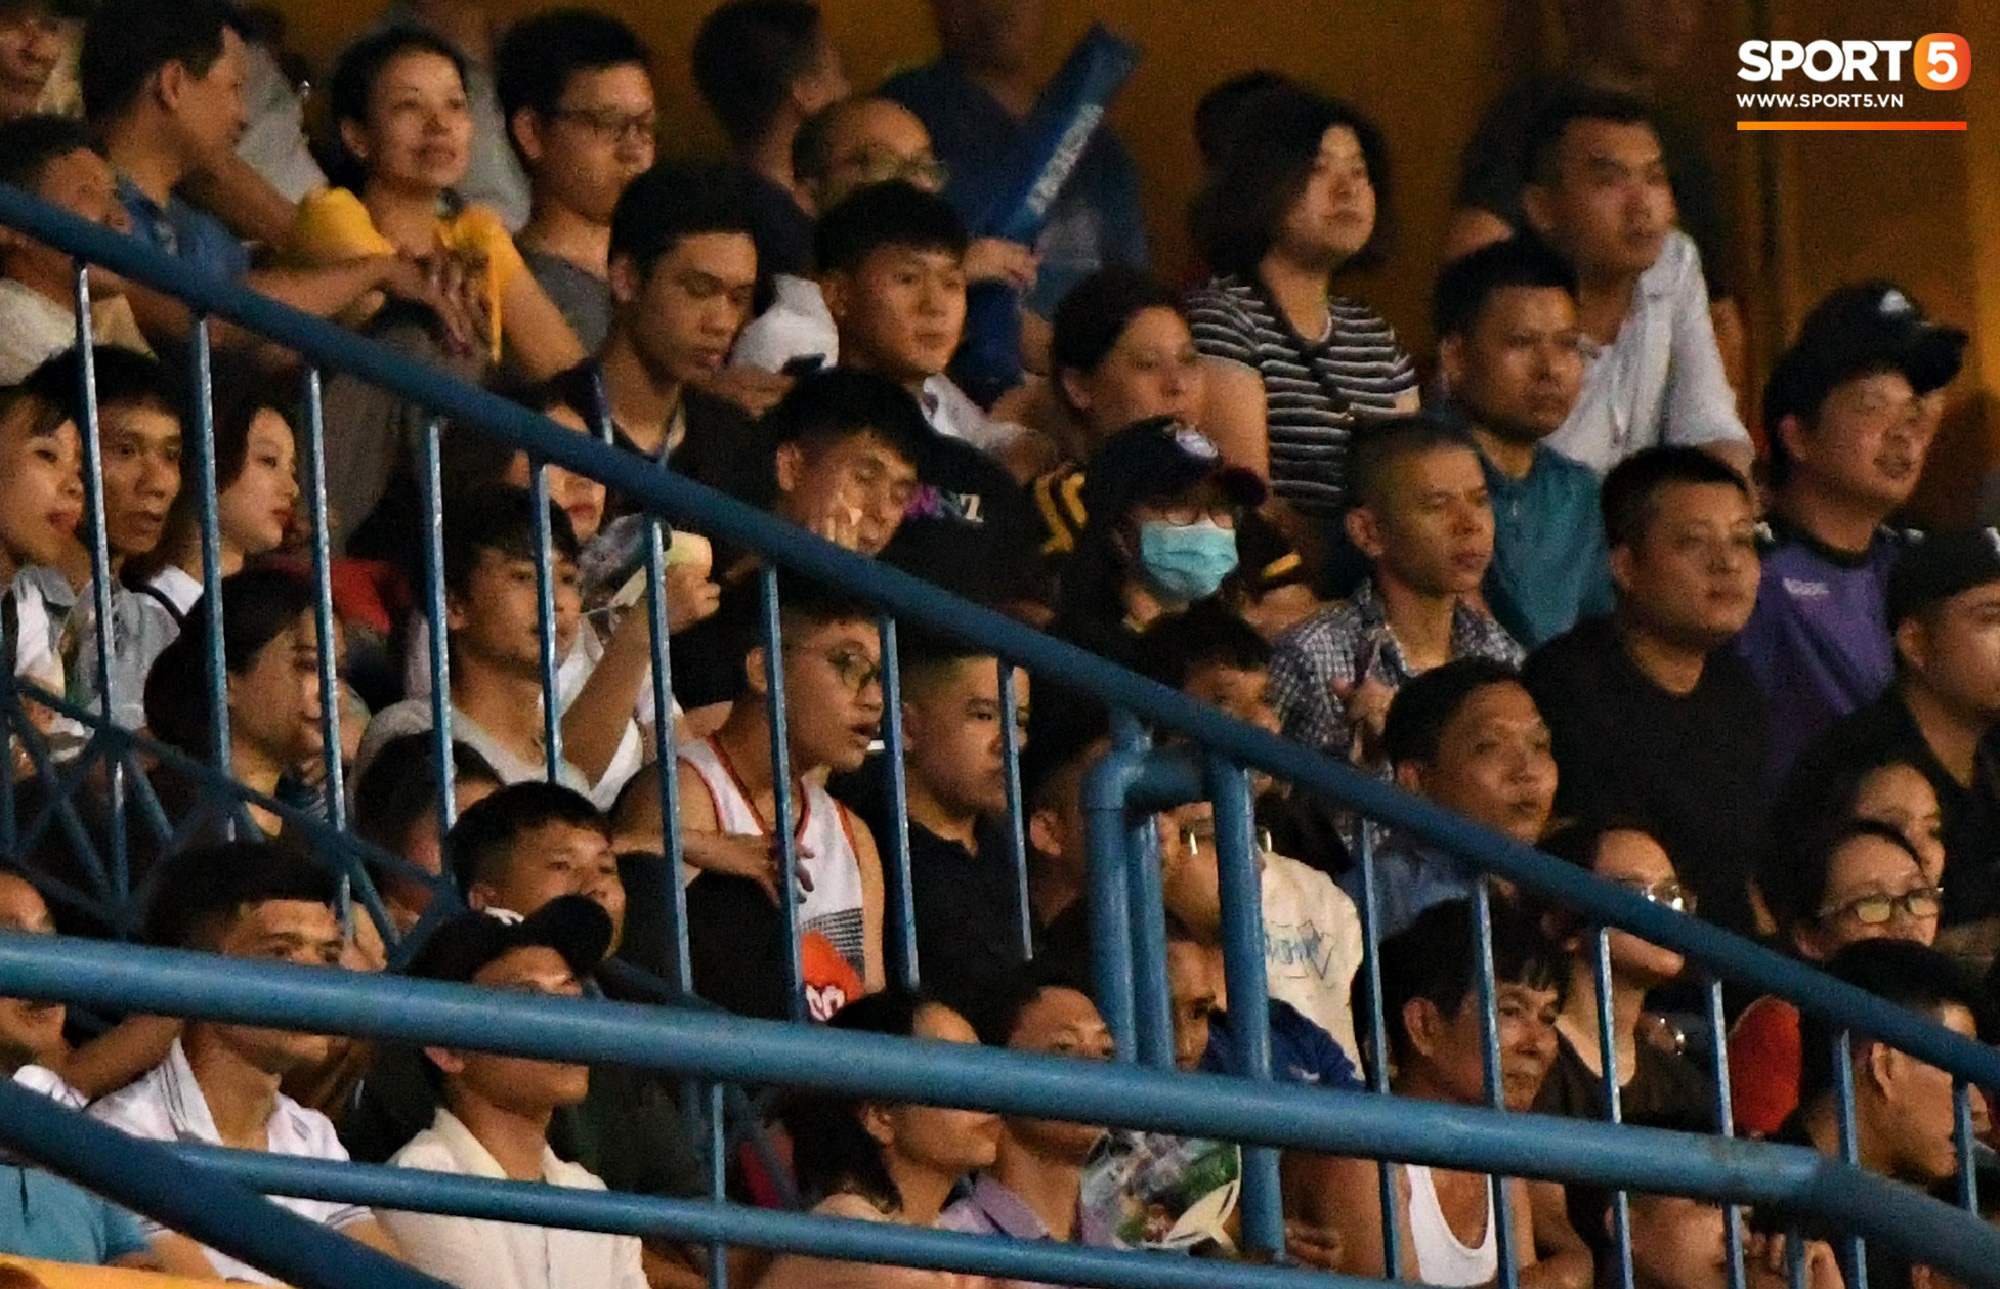 Đình Trọng đến muộn, loay hoay tìm người yêu trong biển người trên khán đài trận Hà Nội FC vs Hải Phòng  - Ảnh 7.